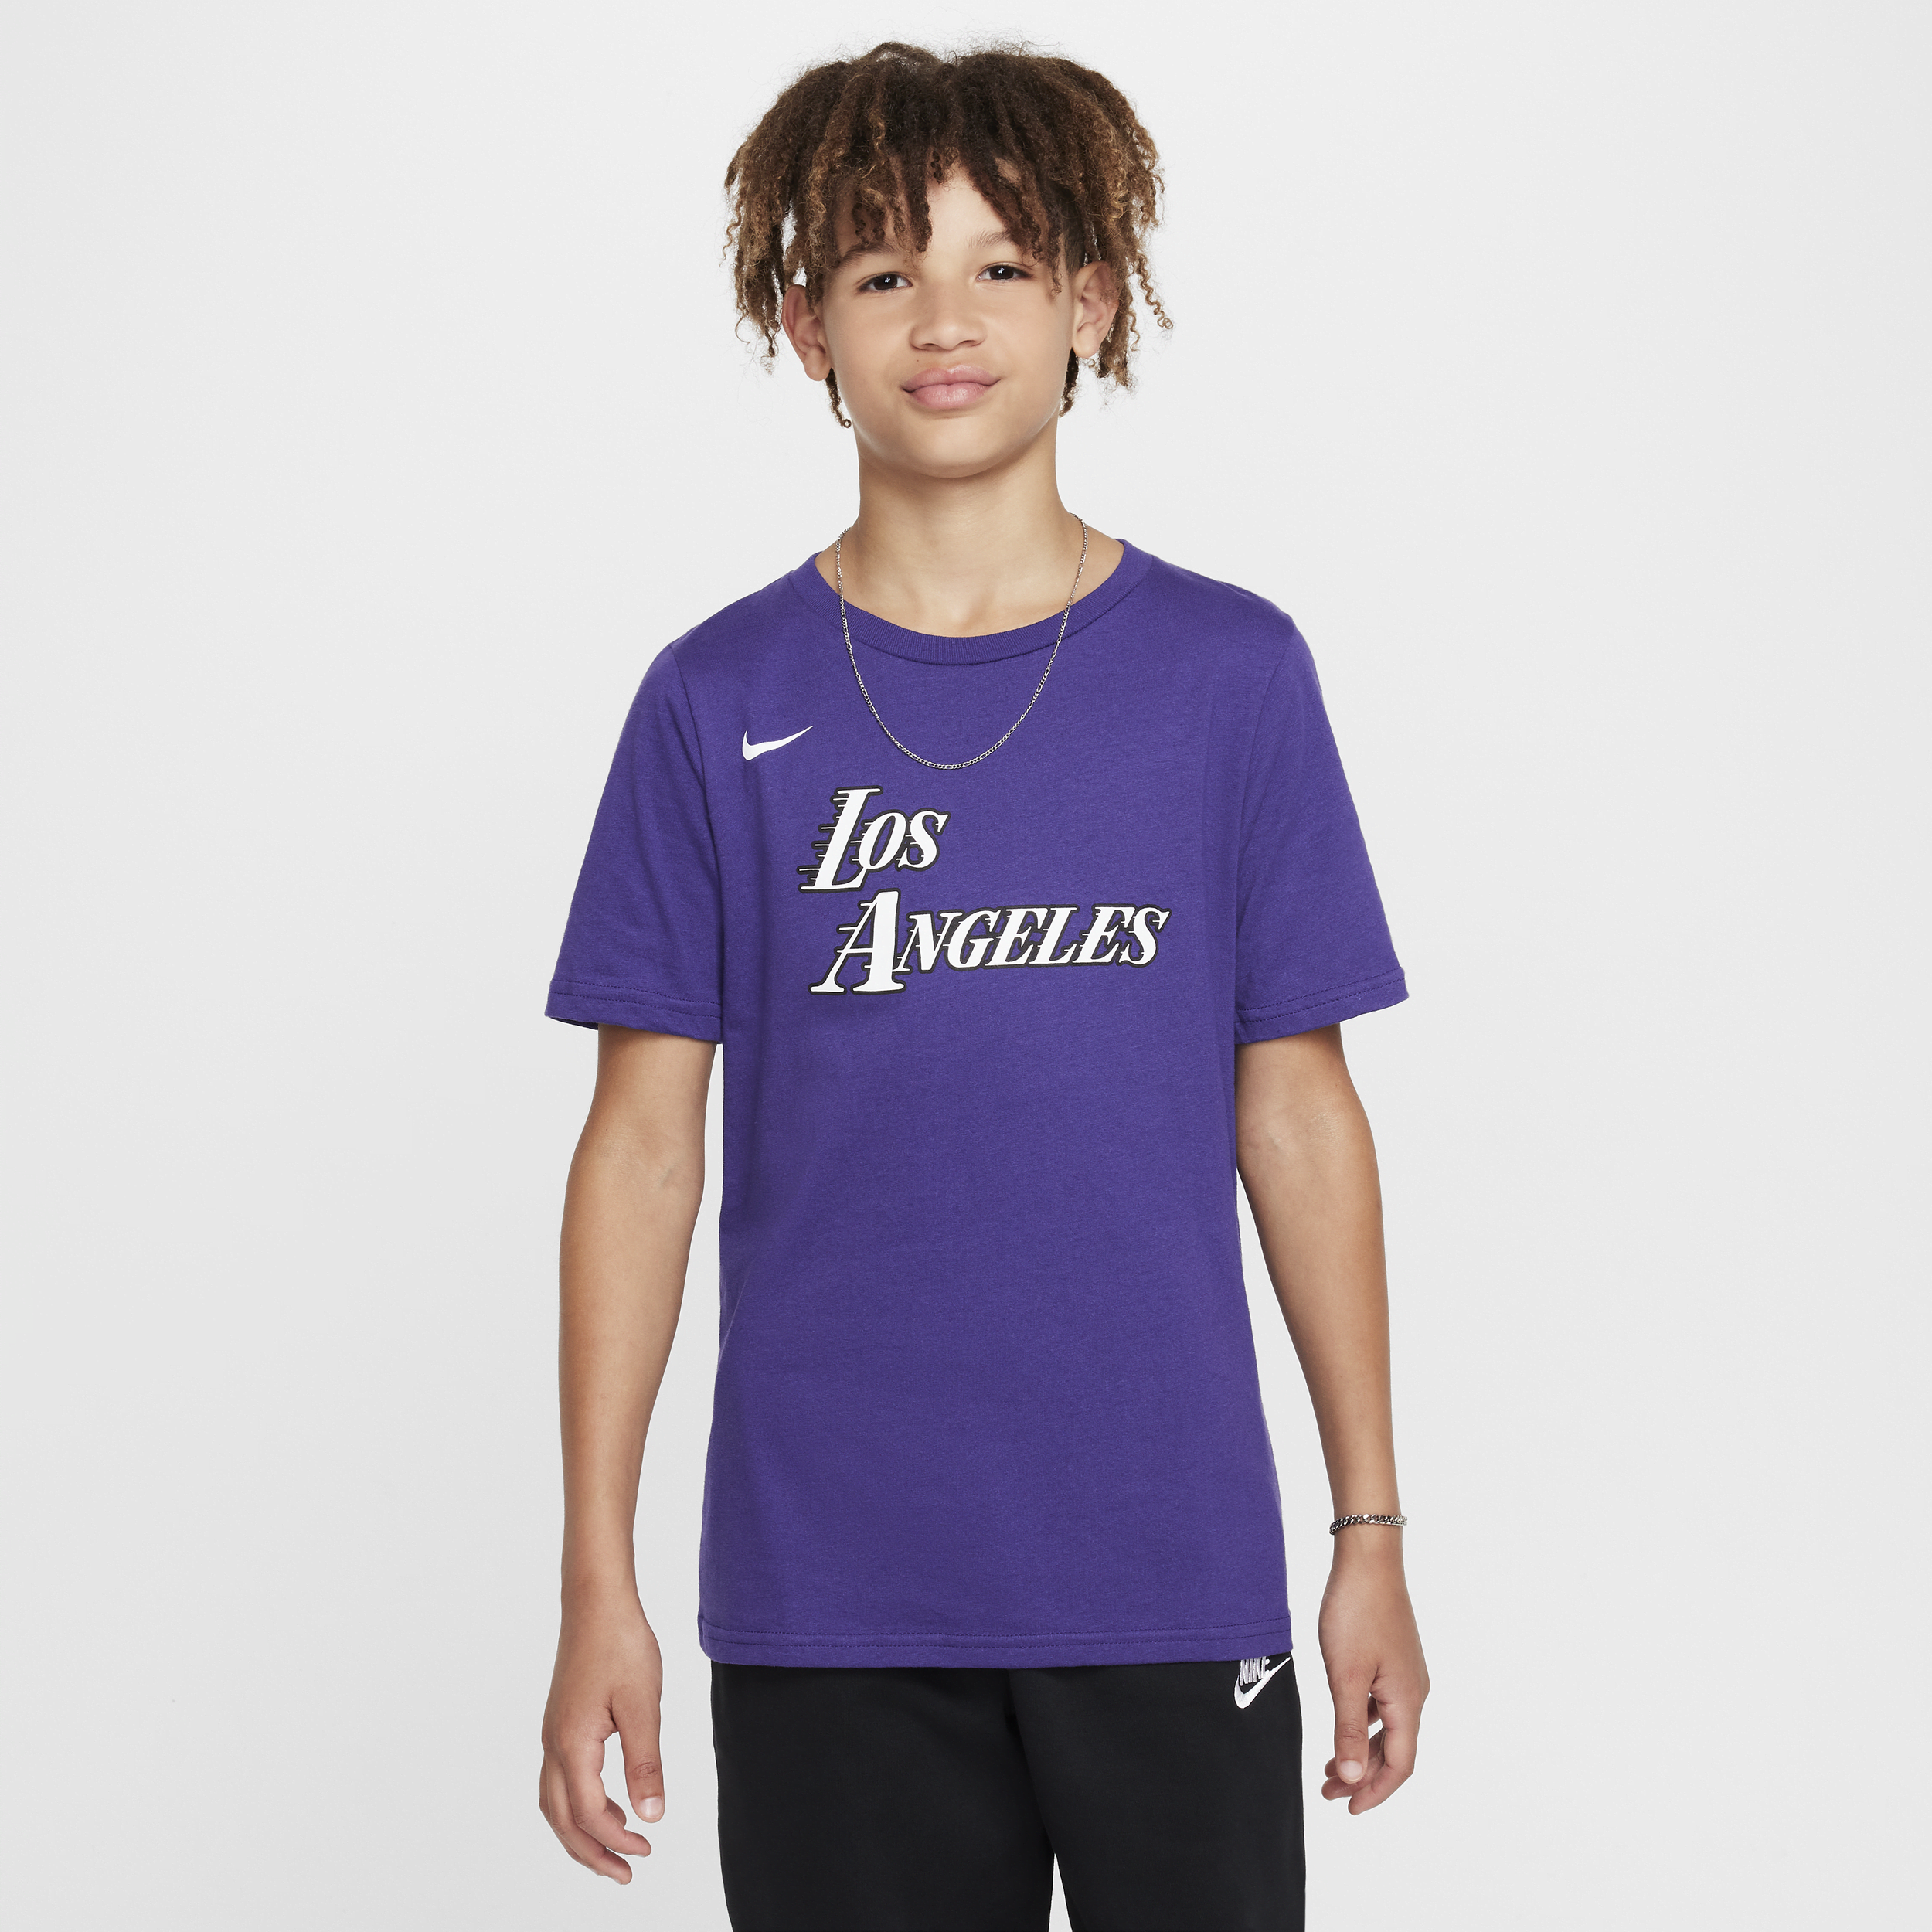 Los Angeles Lakers City Edition Nike NBA-kindershirt met logo - Paars